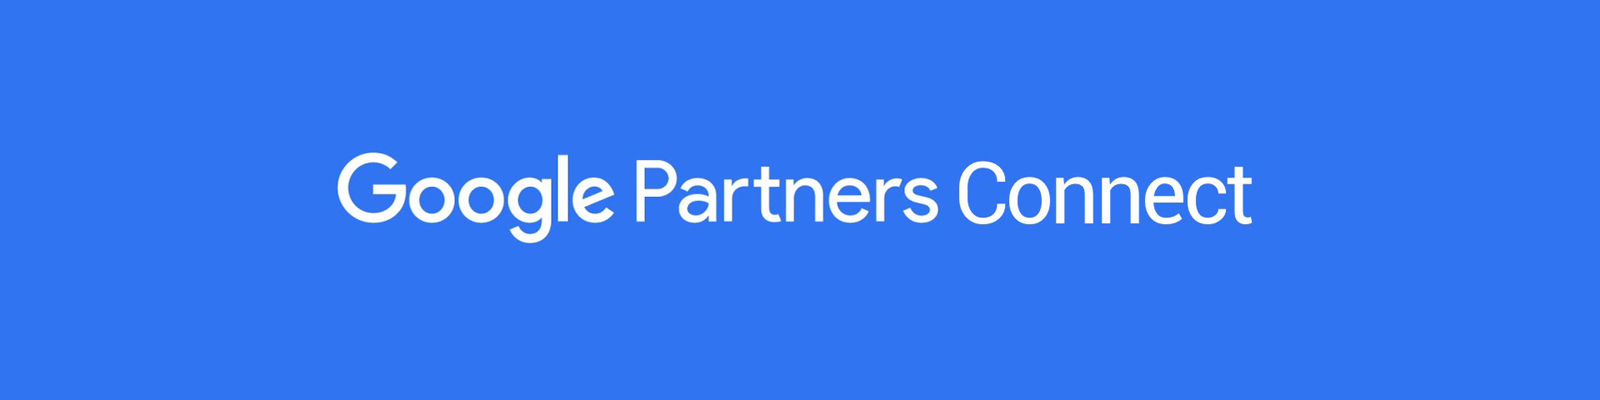 articolo_google_partner